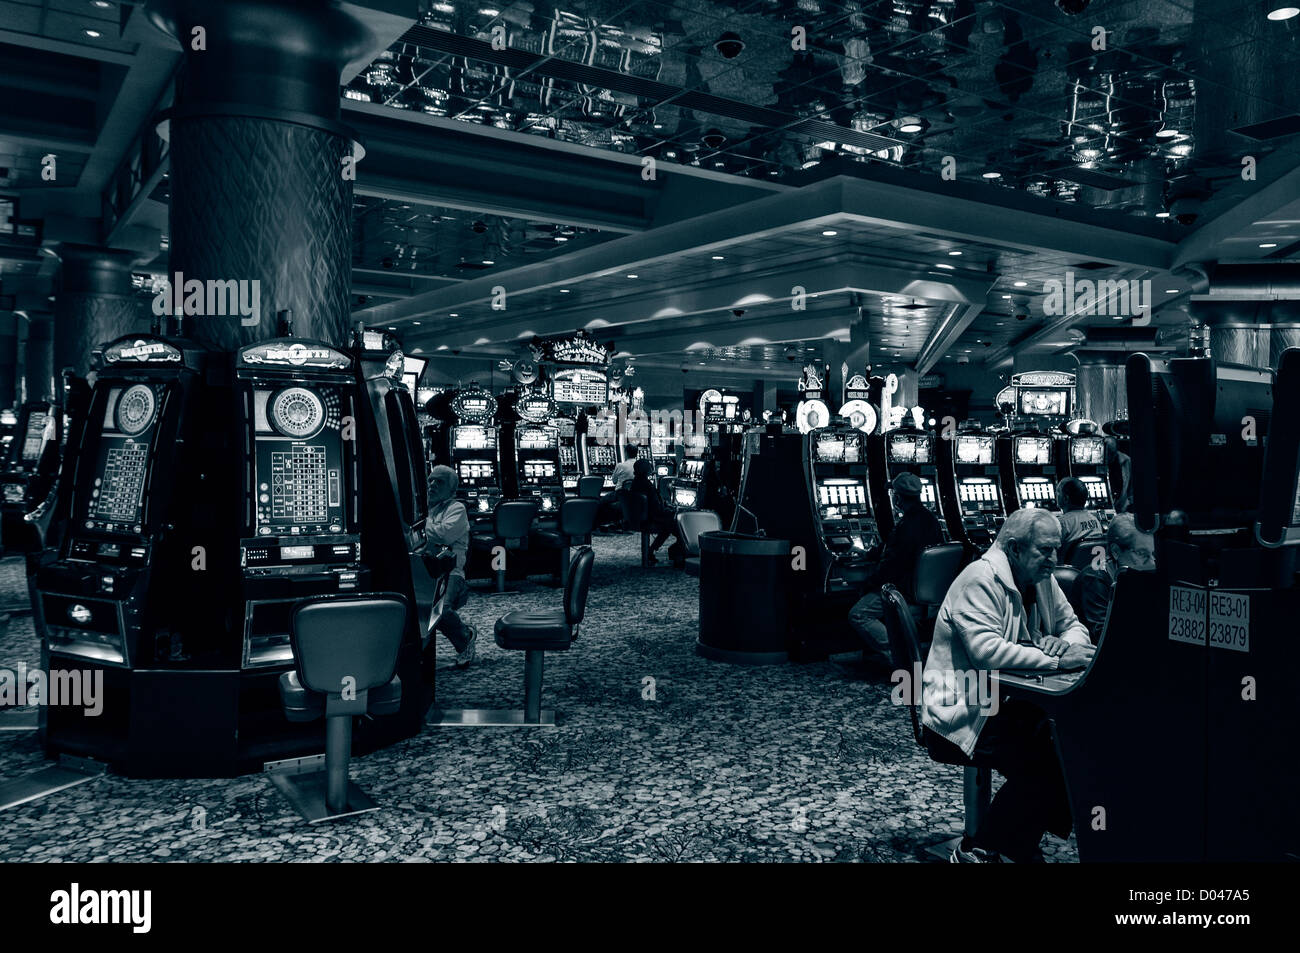 Los hombres sentarse apuestas en máquinas tragamonedas, Foxwoods Resort Casino interior, Ledyard, Connecticut, EE.UU. Foto de stock